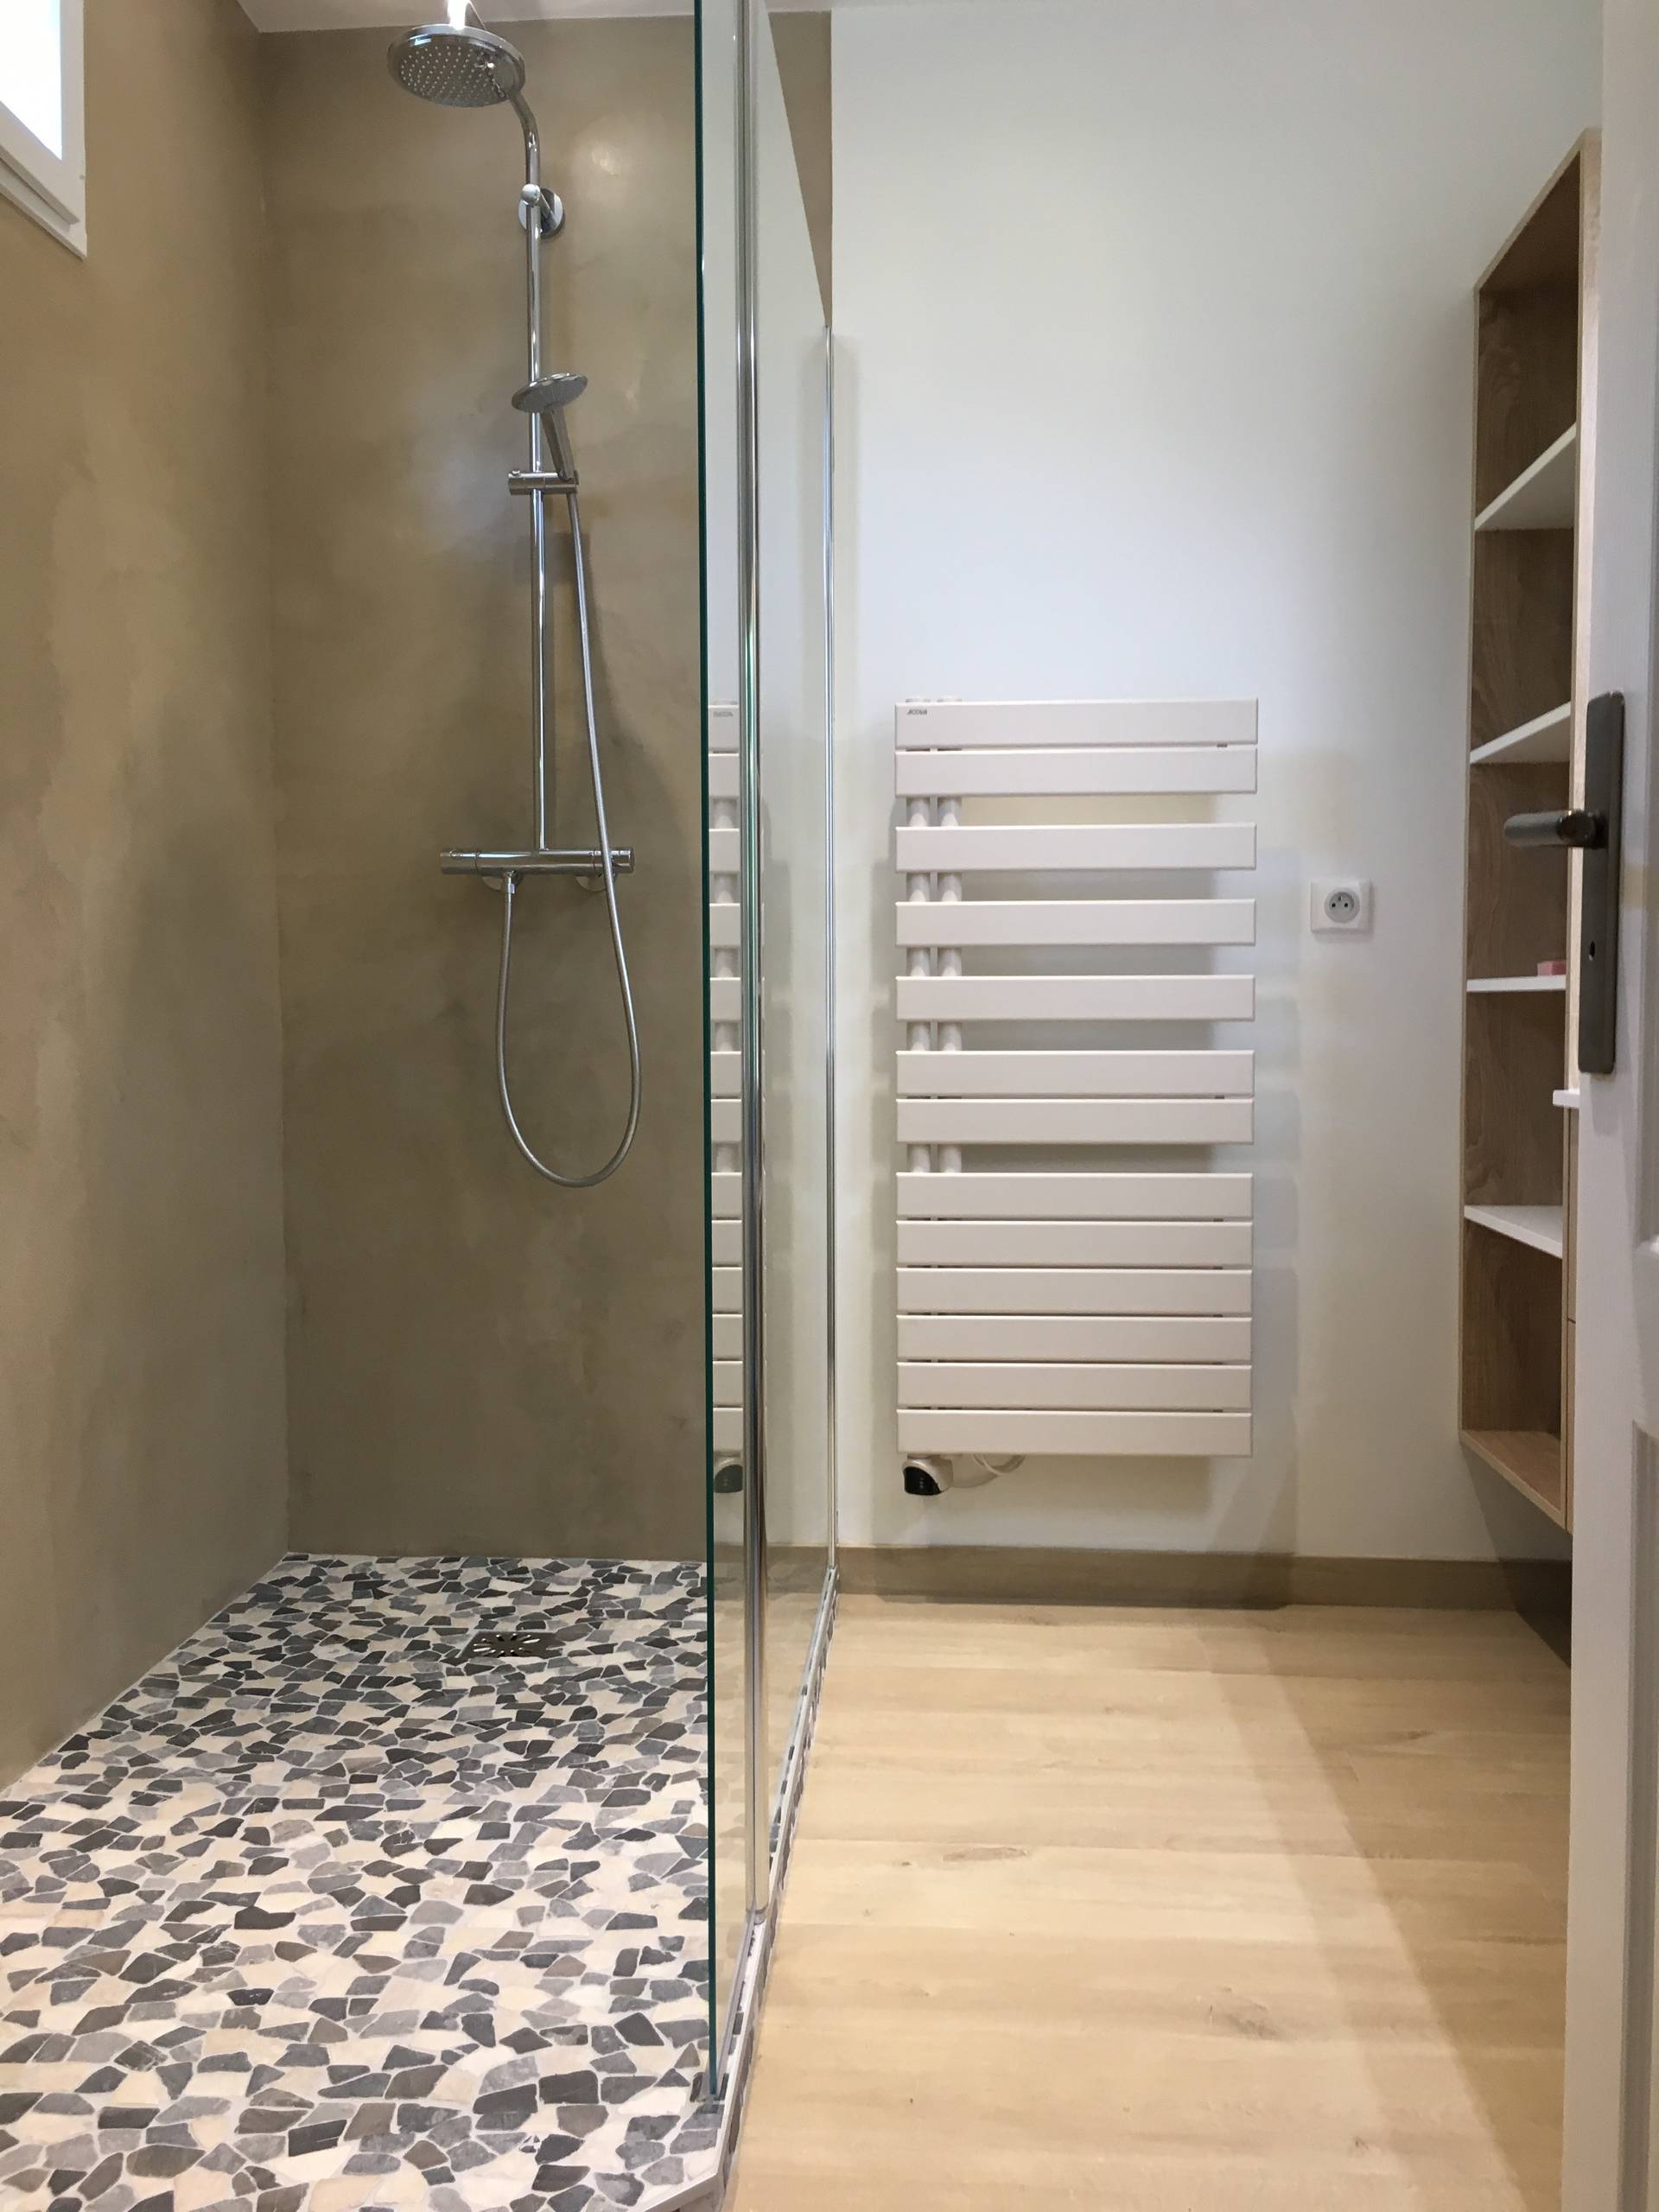 Douche à l'italienne en béton ciré et petits carreaux au sol - Contemporary  - Bathroom - Paris - by CLEHOME DECO | Houzz